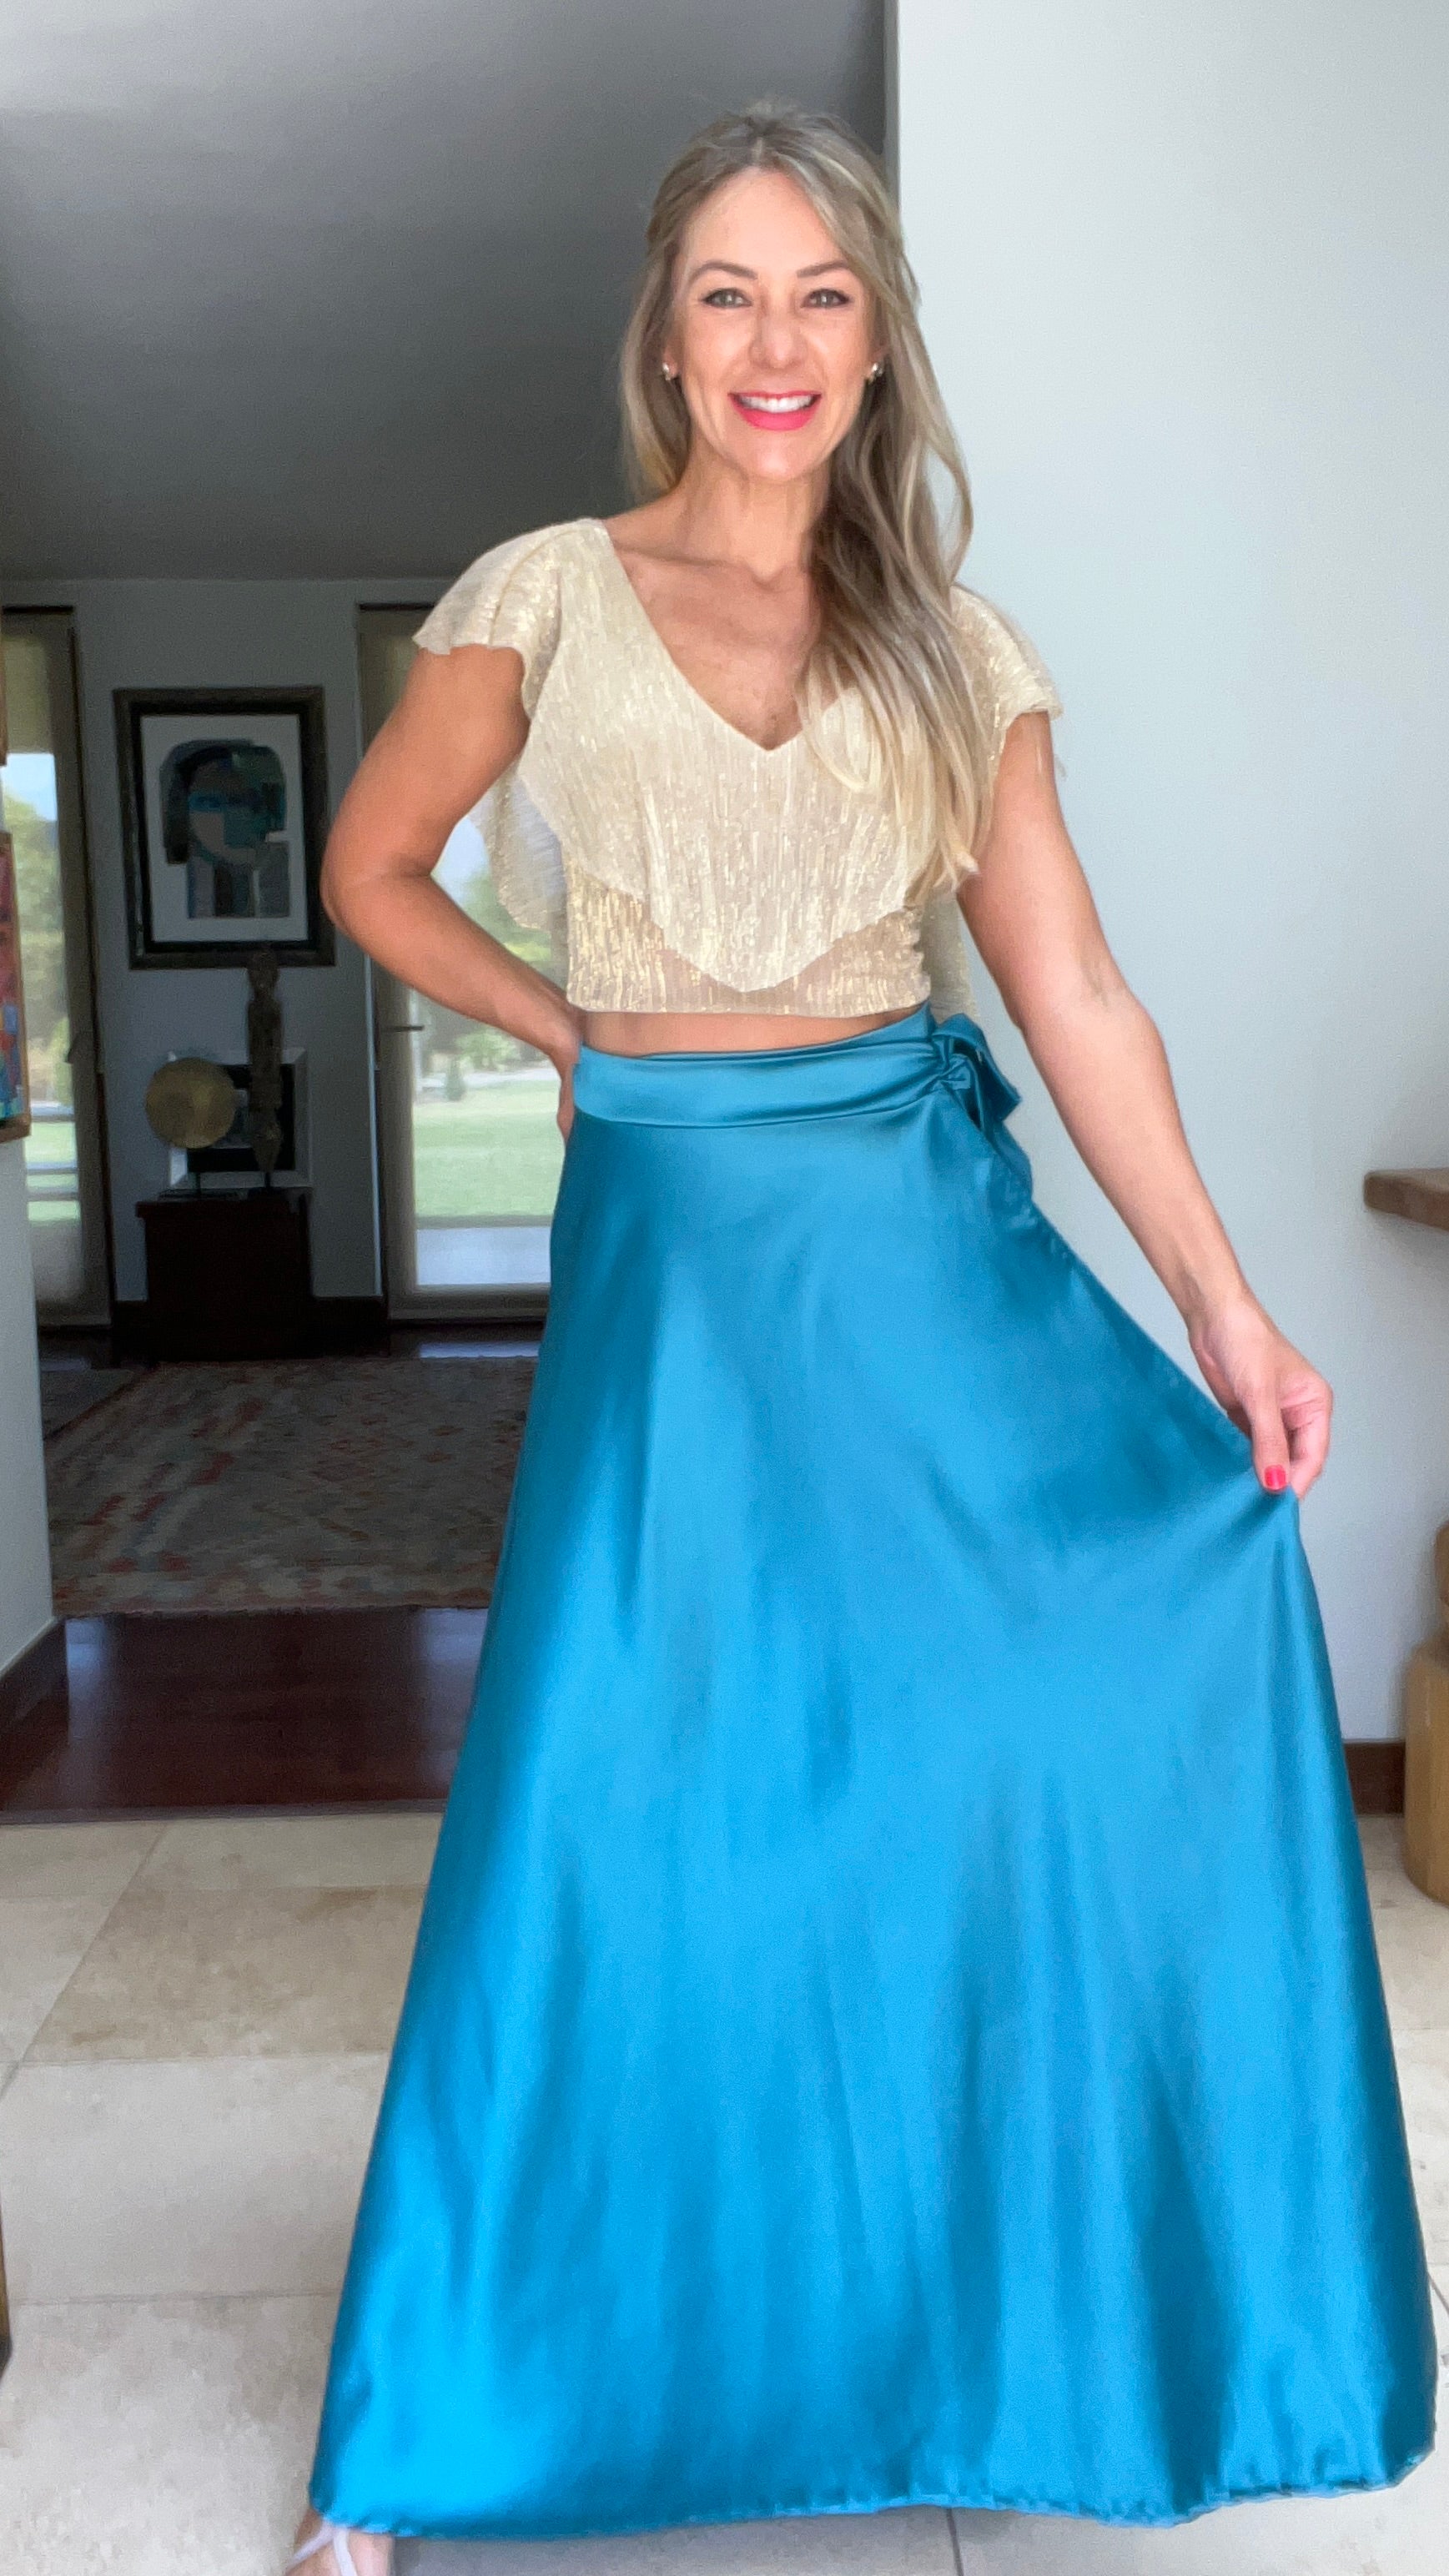 Falda envolvente piel de seda azul verdoso | falda larga satinada azul | Amoramar.cl 